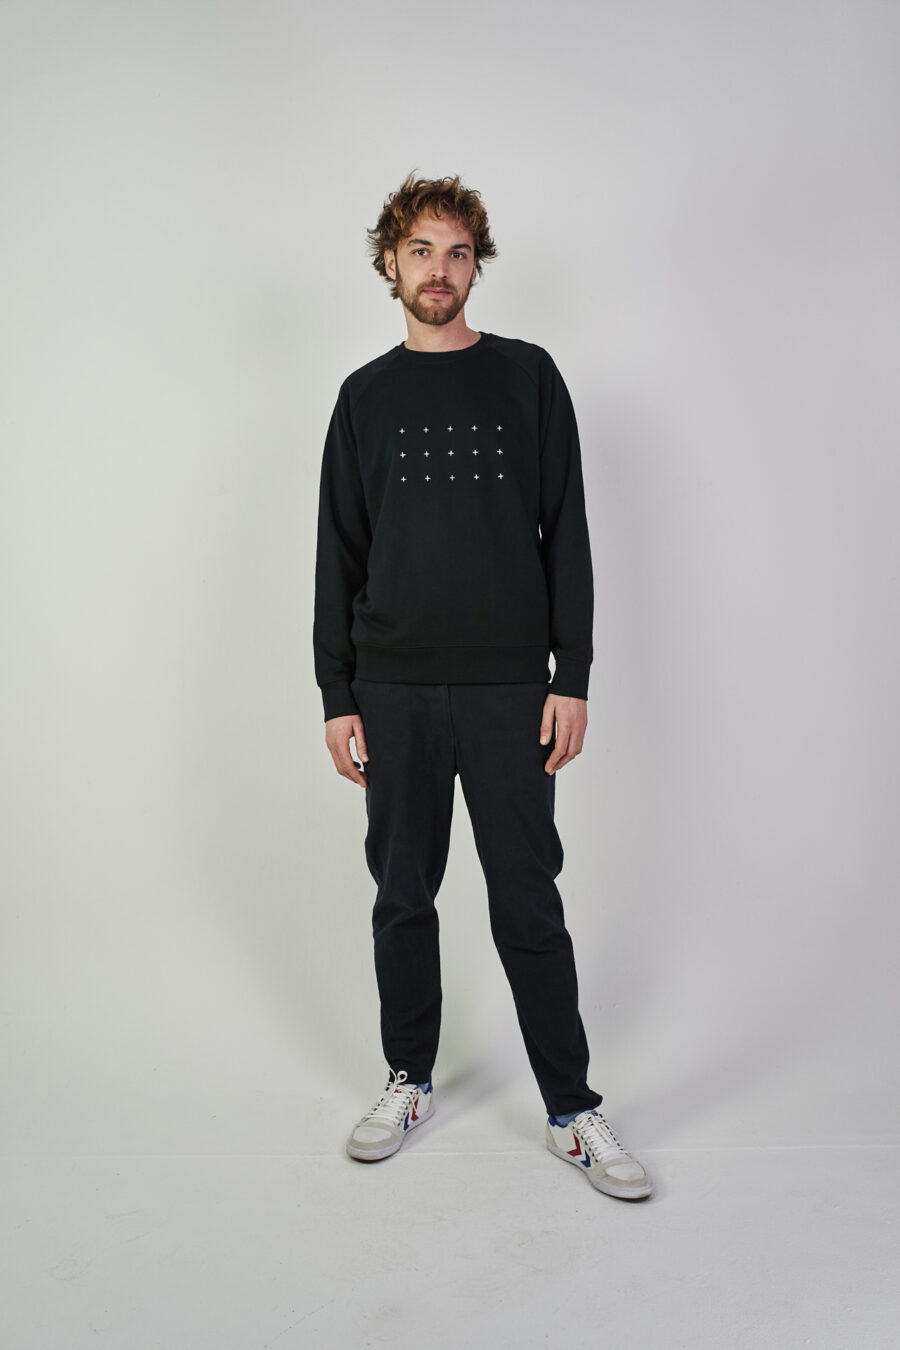 grid.sweater schwarz-weiß